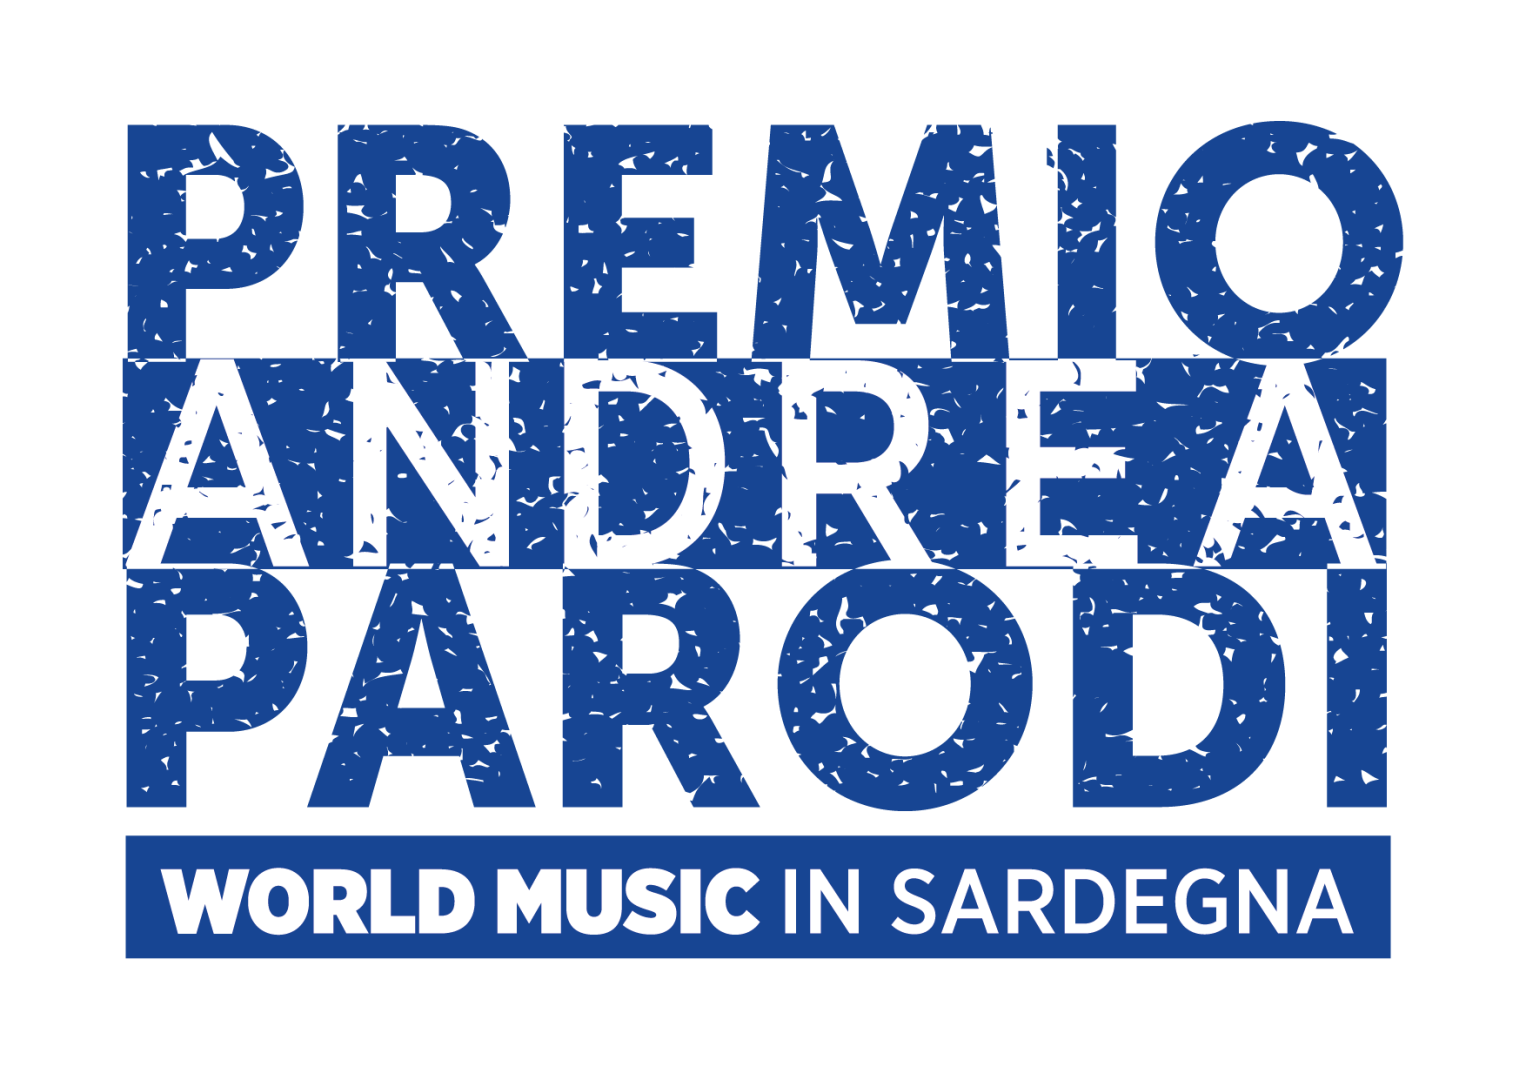 Al via il bando del 17° Premio Andrea Parodi per la world music